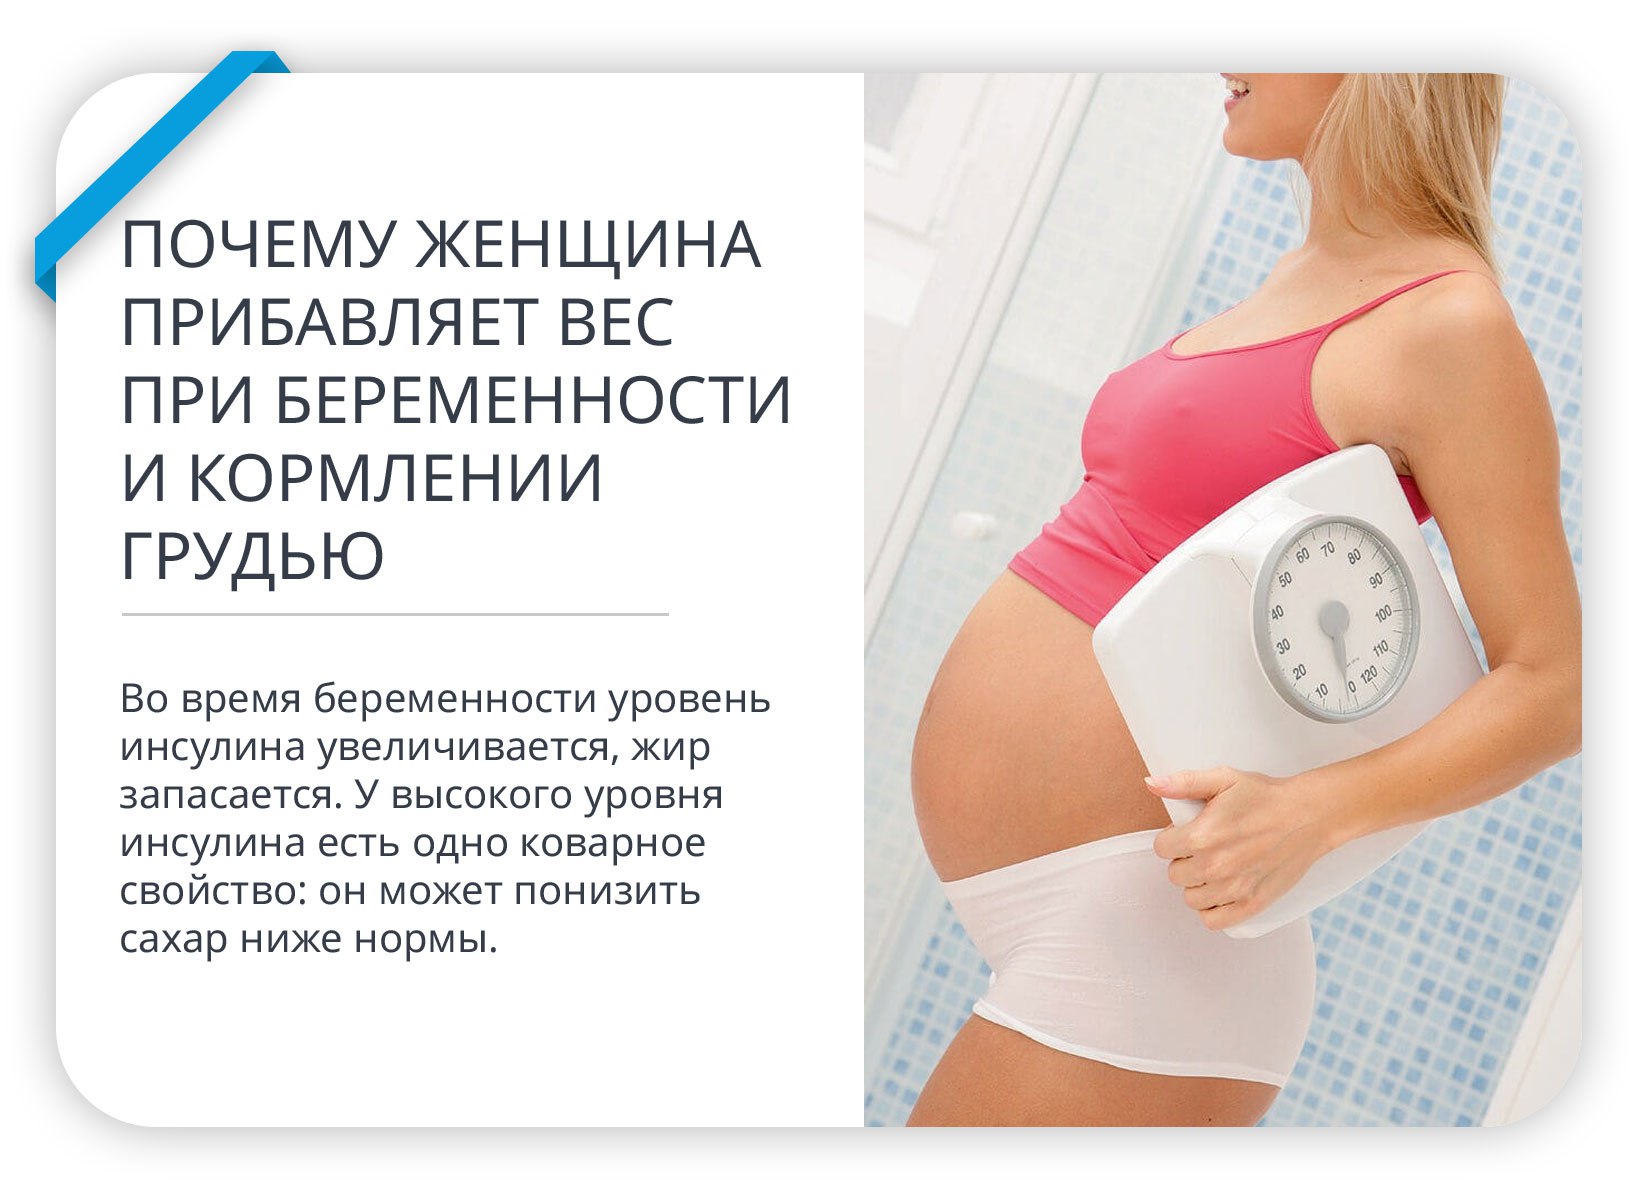 Изменения груди при беременности. Пониженный сахар при беременности. Норма прибавления веса при беременности. Снизить при беременности. Сахар при кормлении грудью.